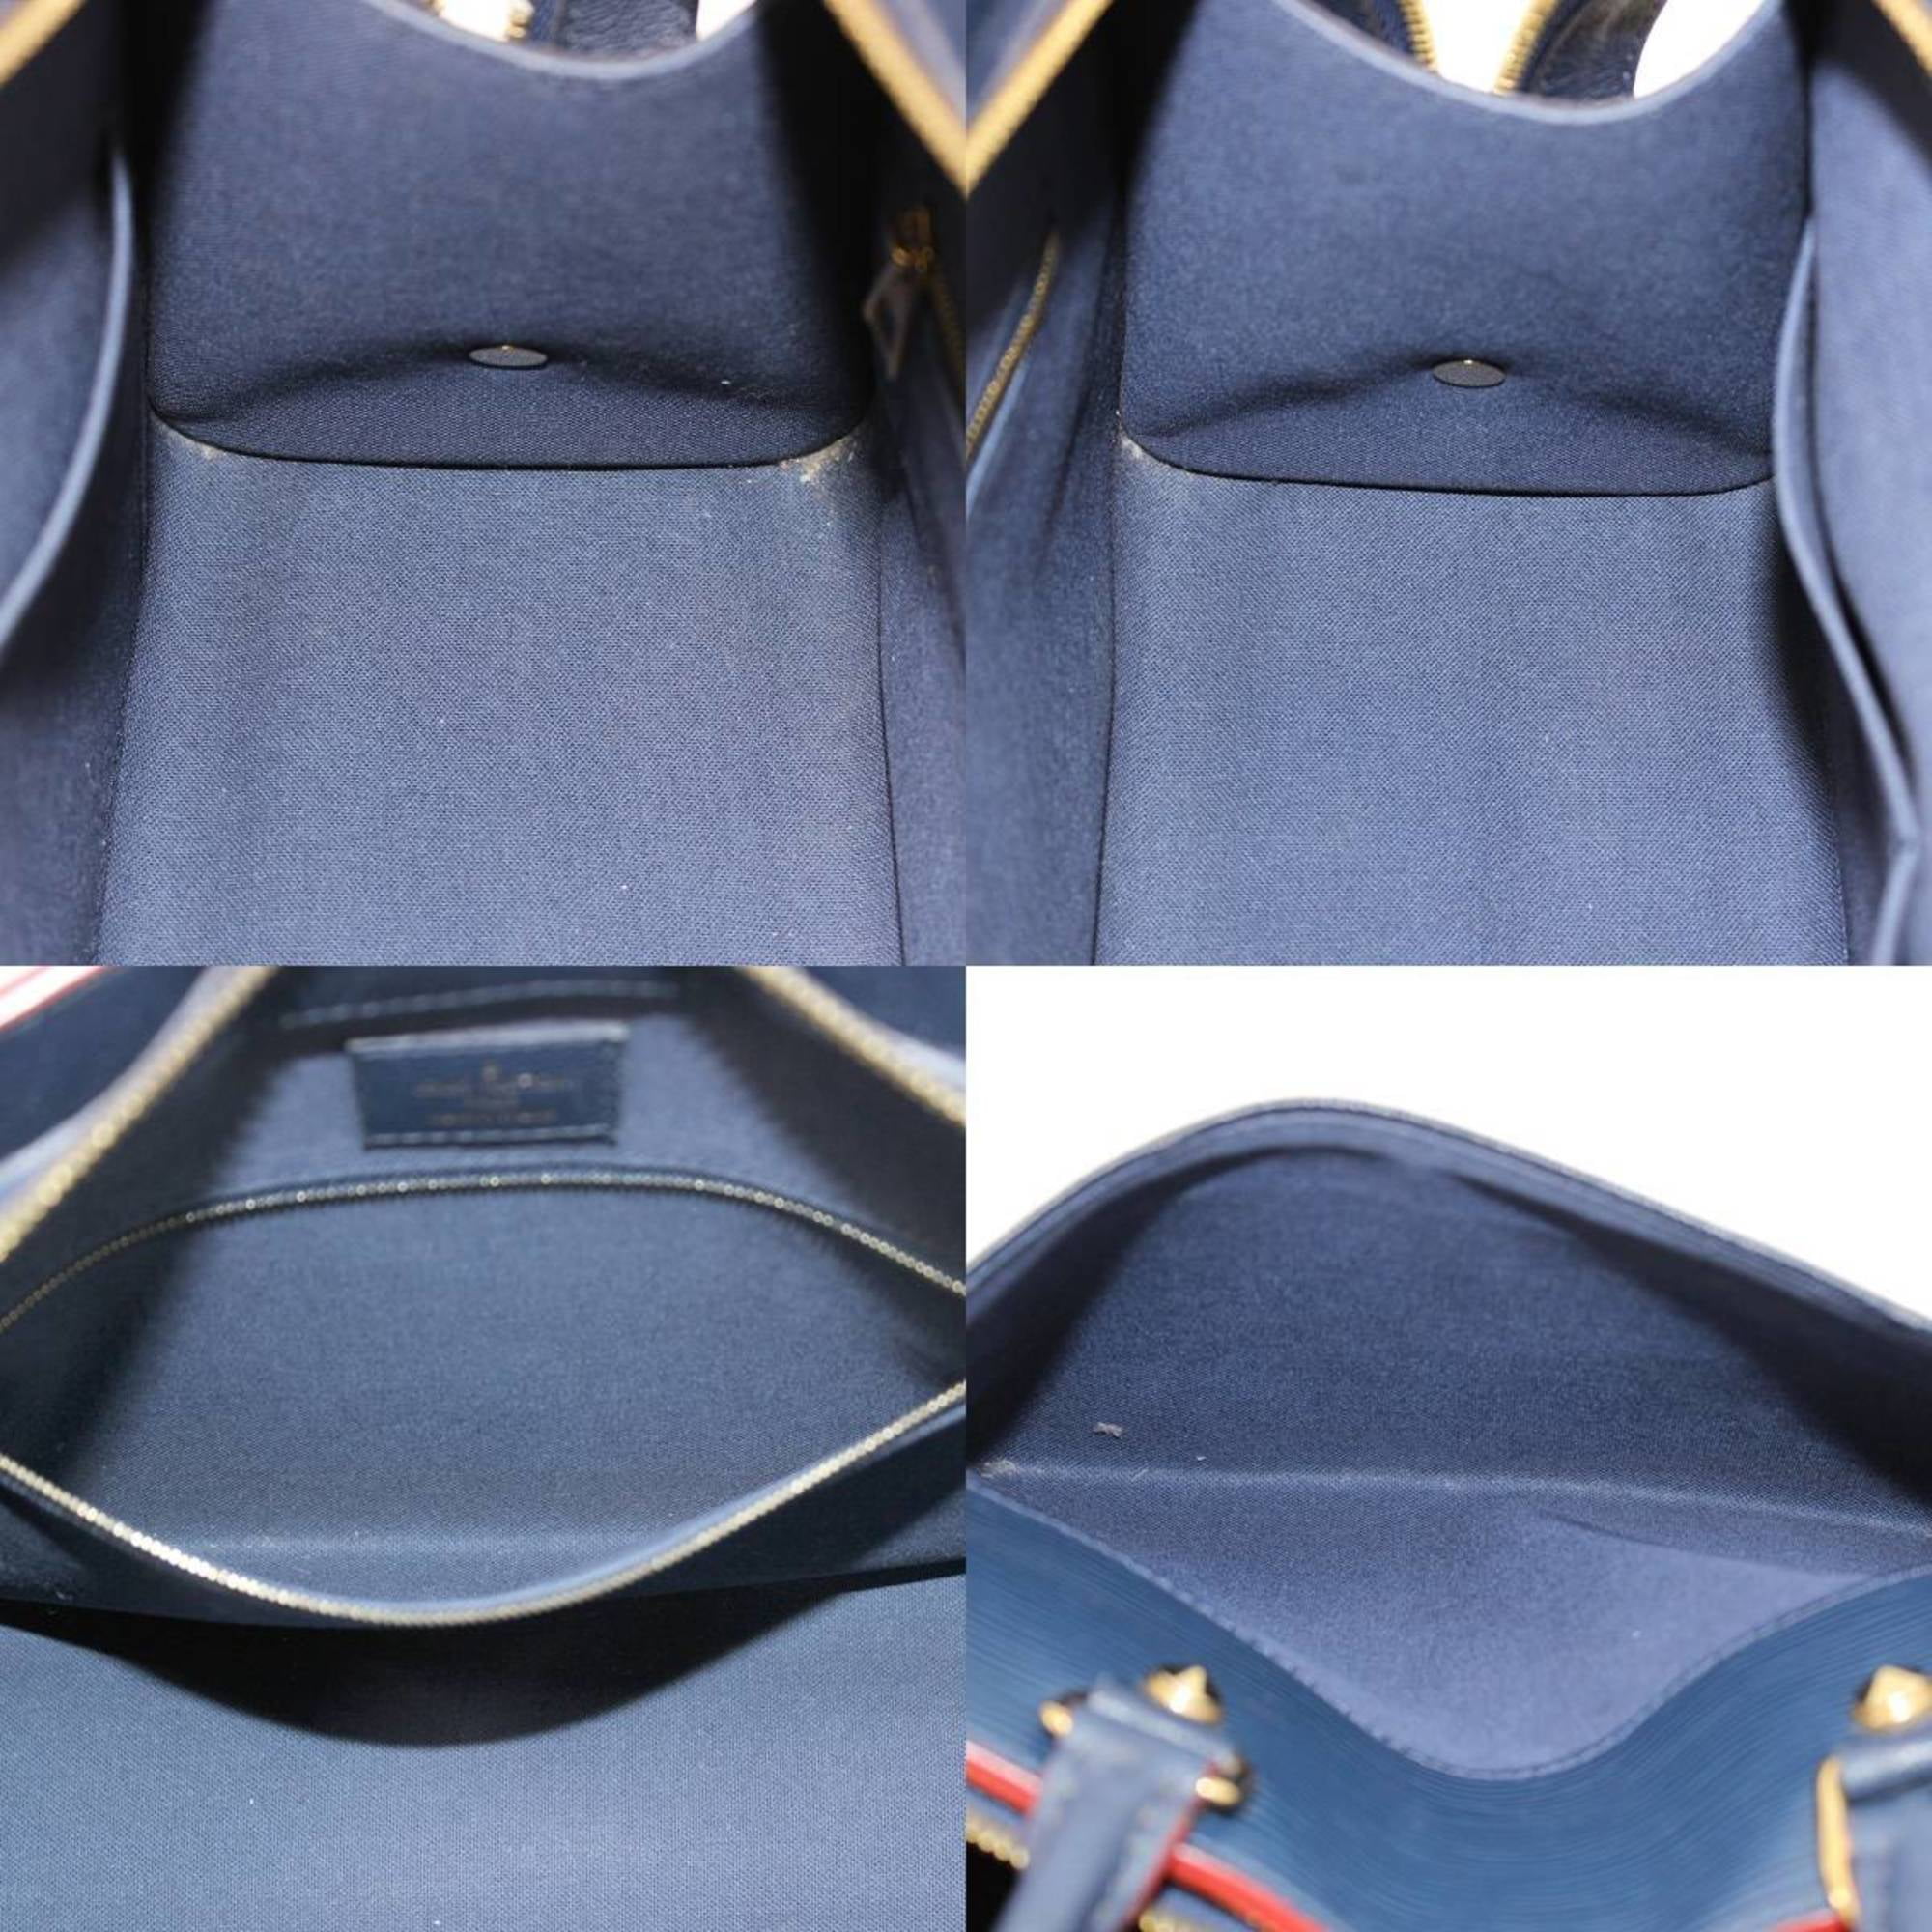 Authenticated Used Louis Vuitton Handbag Shoulder Bag 2Way Rose De Van PM  Claim Calf Leather Ladies M53822 